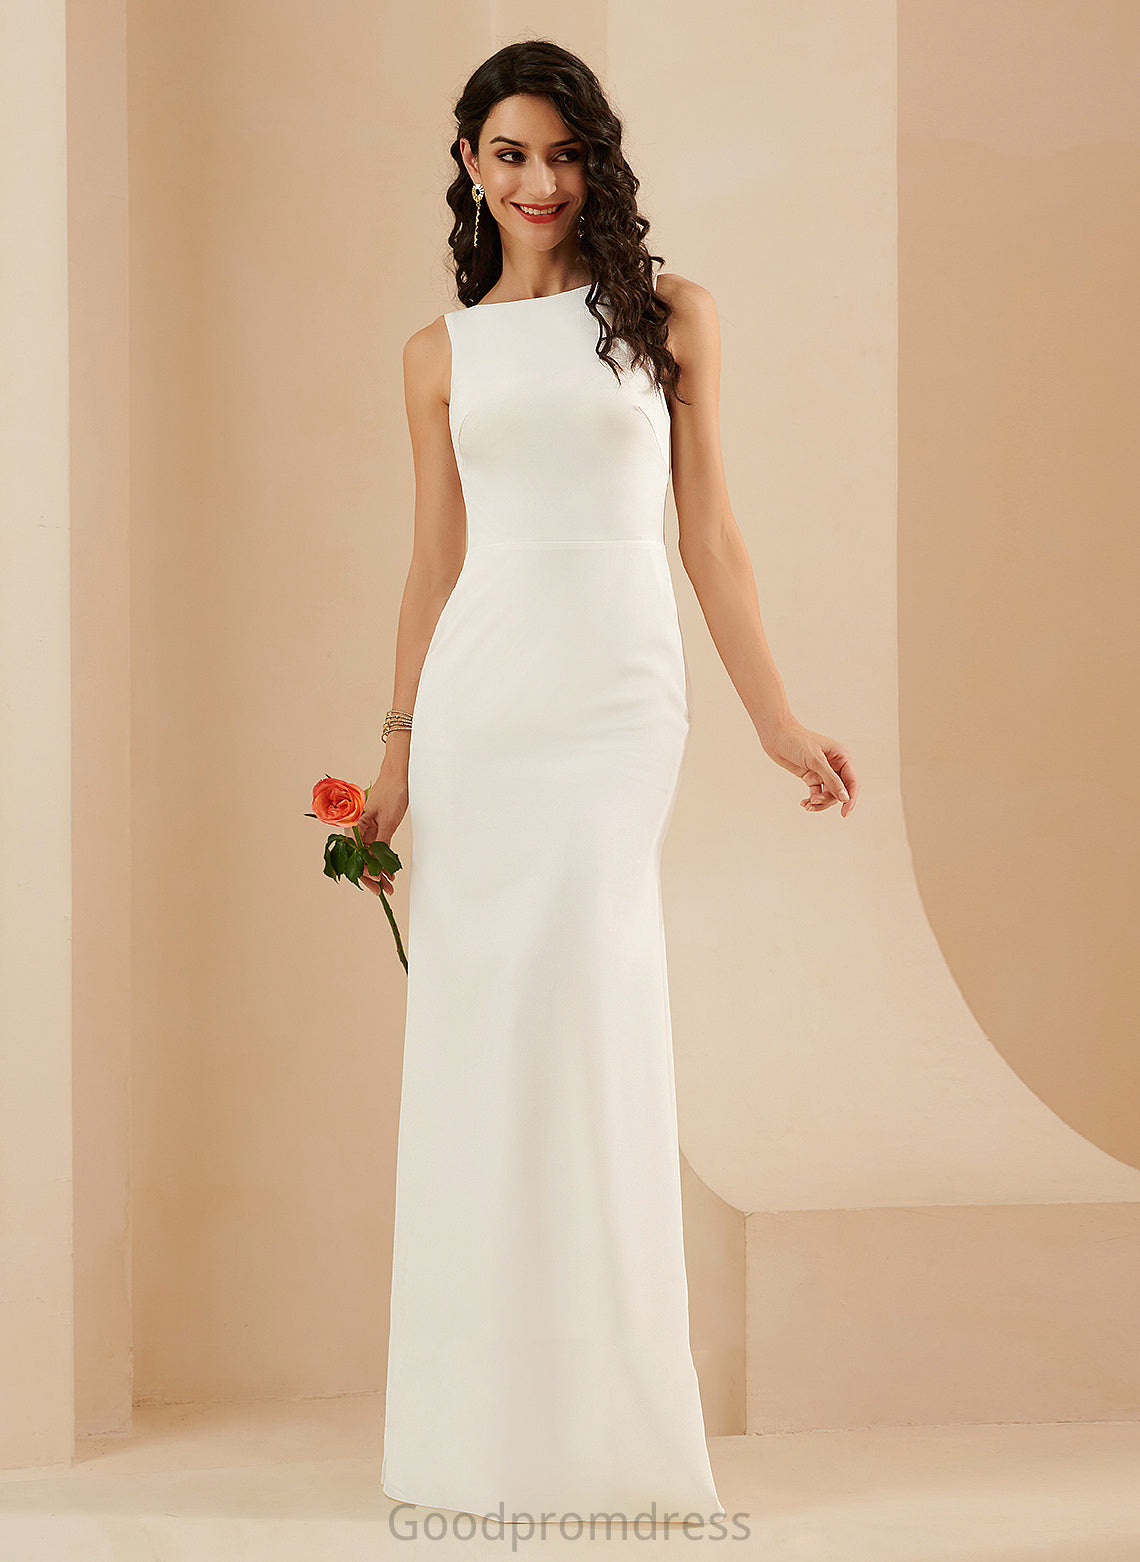 Wedding Floor-Length Dress Kaylee Trumpet/Mermaid Wedding Dresses